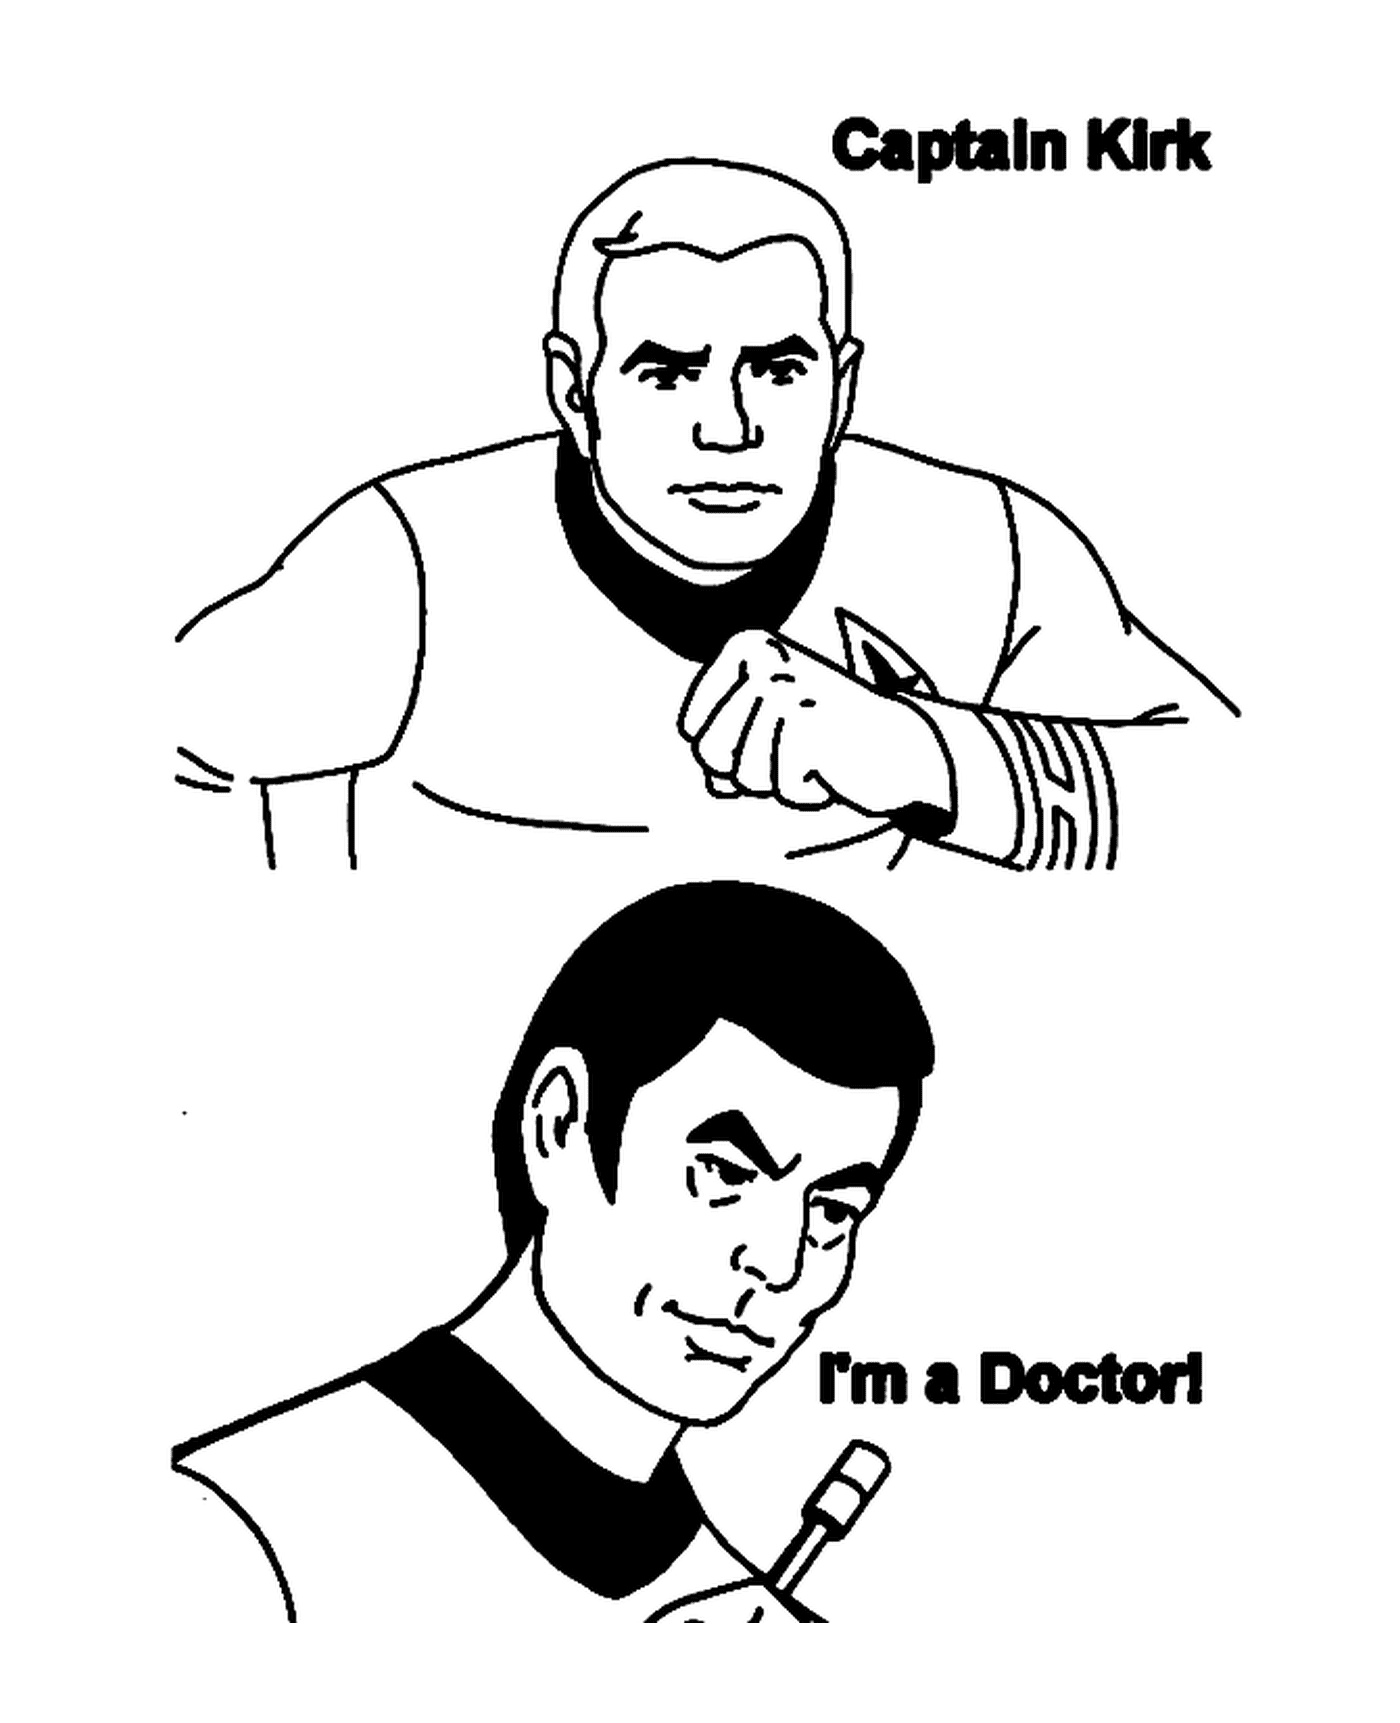   Le capitaine Kirk et le docteur de Star Trek 